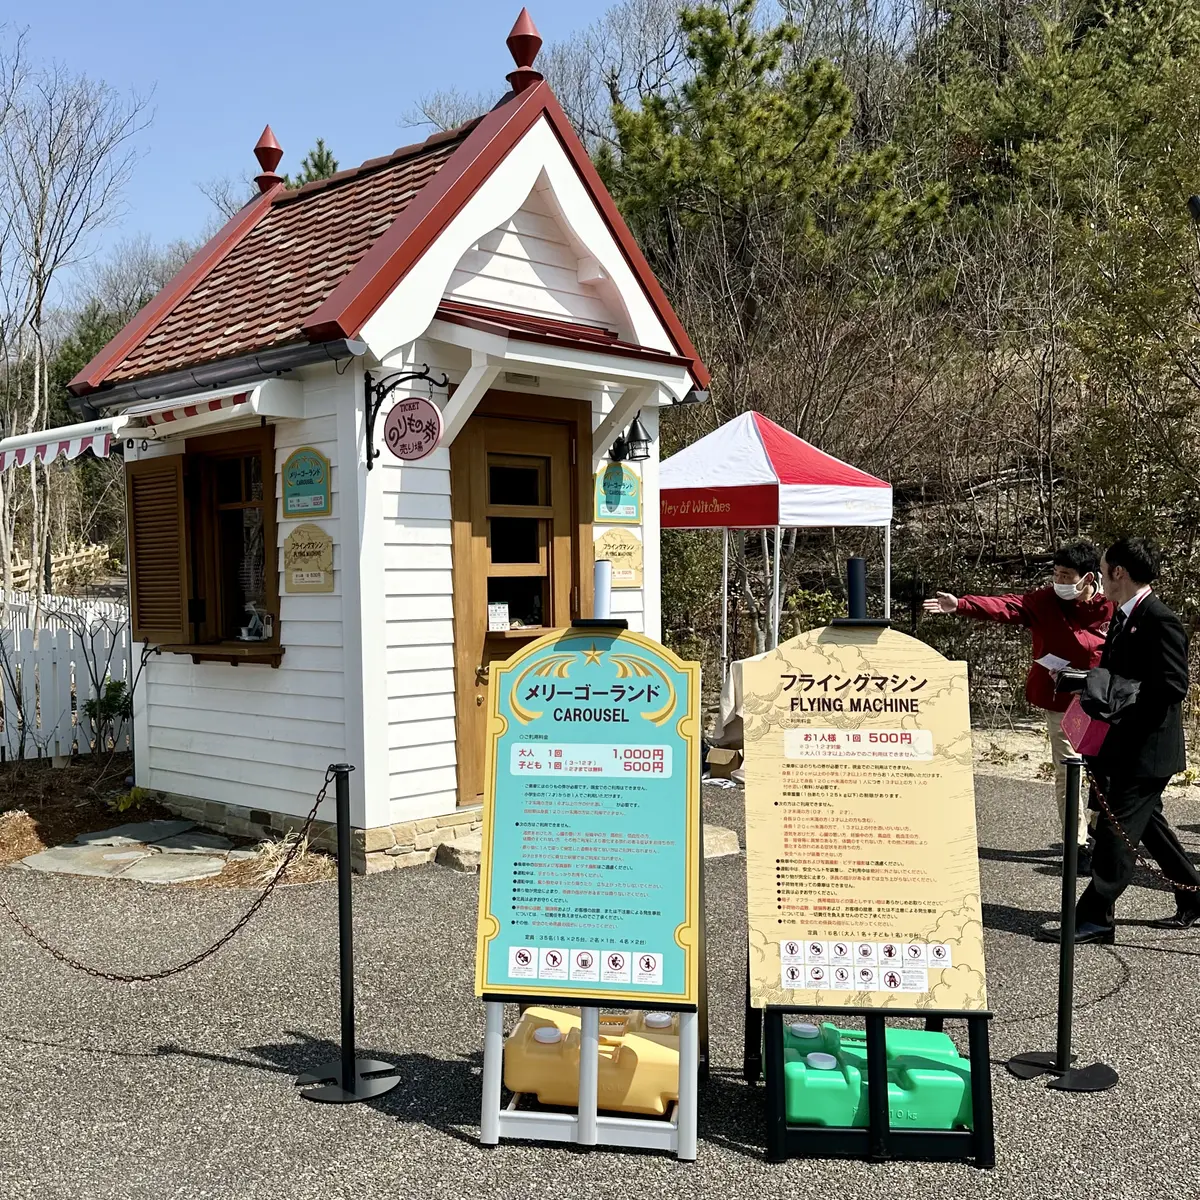 ジブリパーク「魔女の谷」のアトラクション施設「メリーゴーランド」と「フライングマシン」に乗るための「のりもの券」を販売している、「オキノ邸」前の小さな小屋